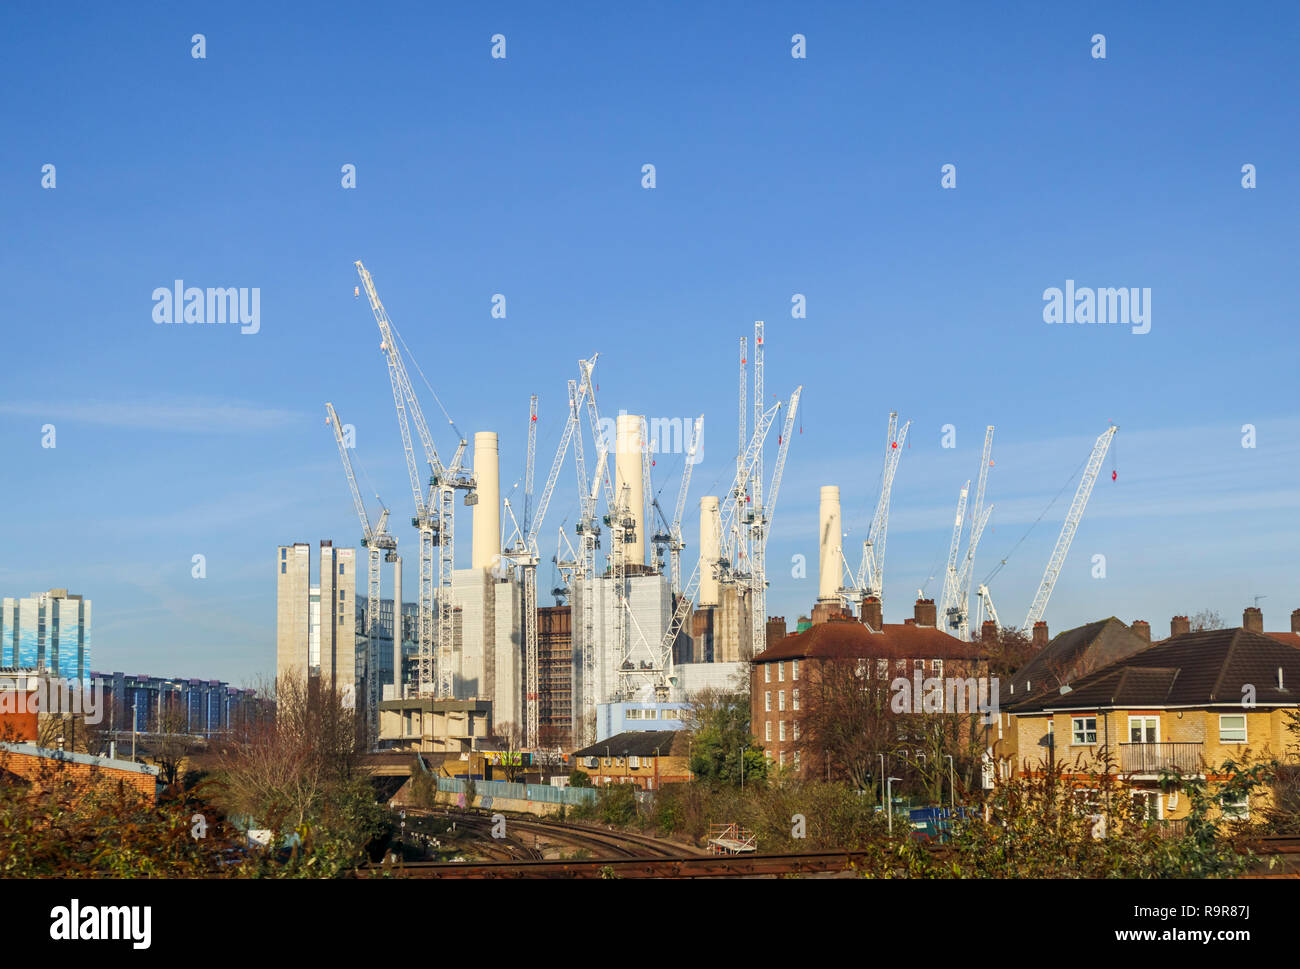 Grues à tour blanche entourent la célèbre Battersea Power Station désaffectée réaménagée pour des usages mixtes et appartements de luxe haut de gamme Banque D'Images